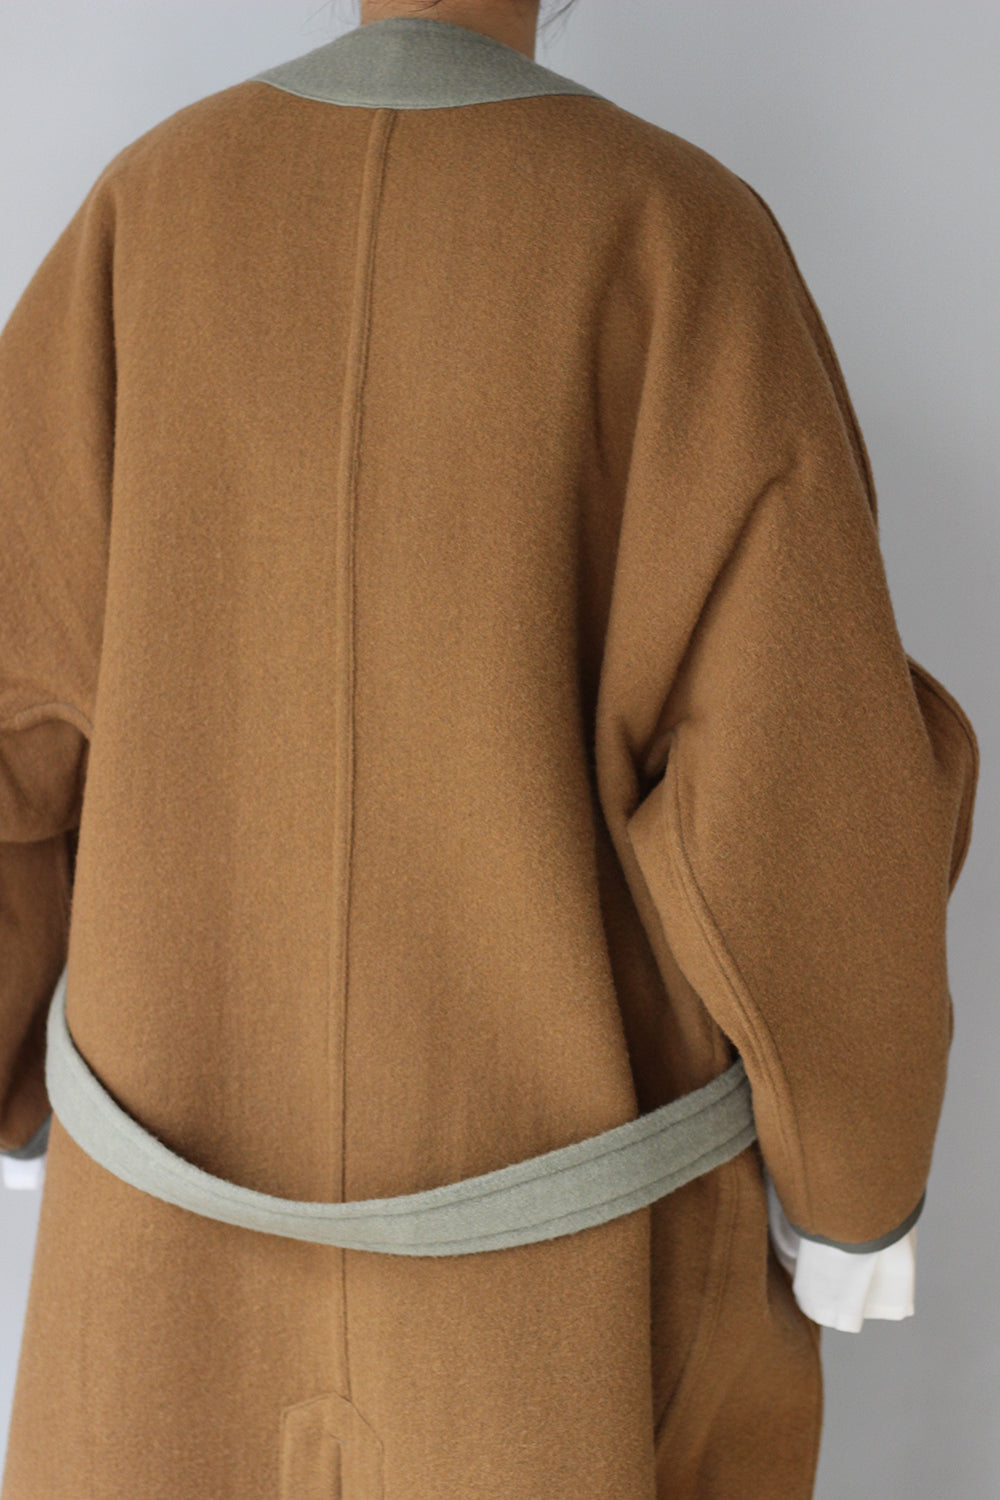 JUN MIKAMI "reversible coat" (sage)